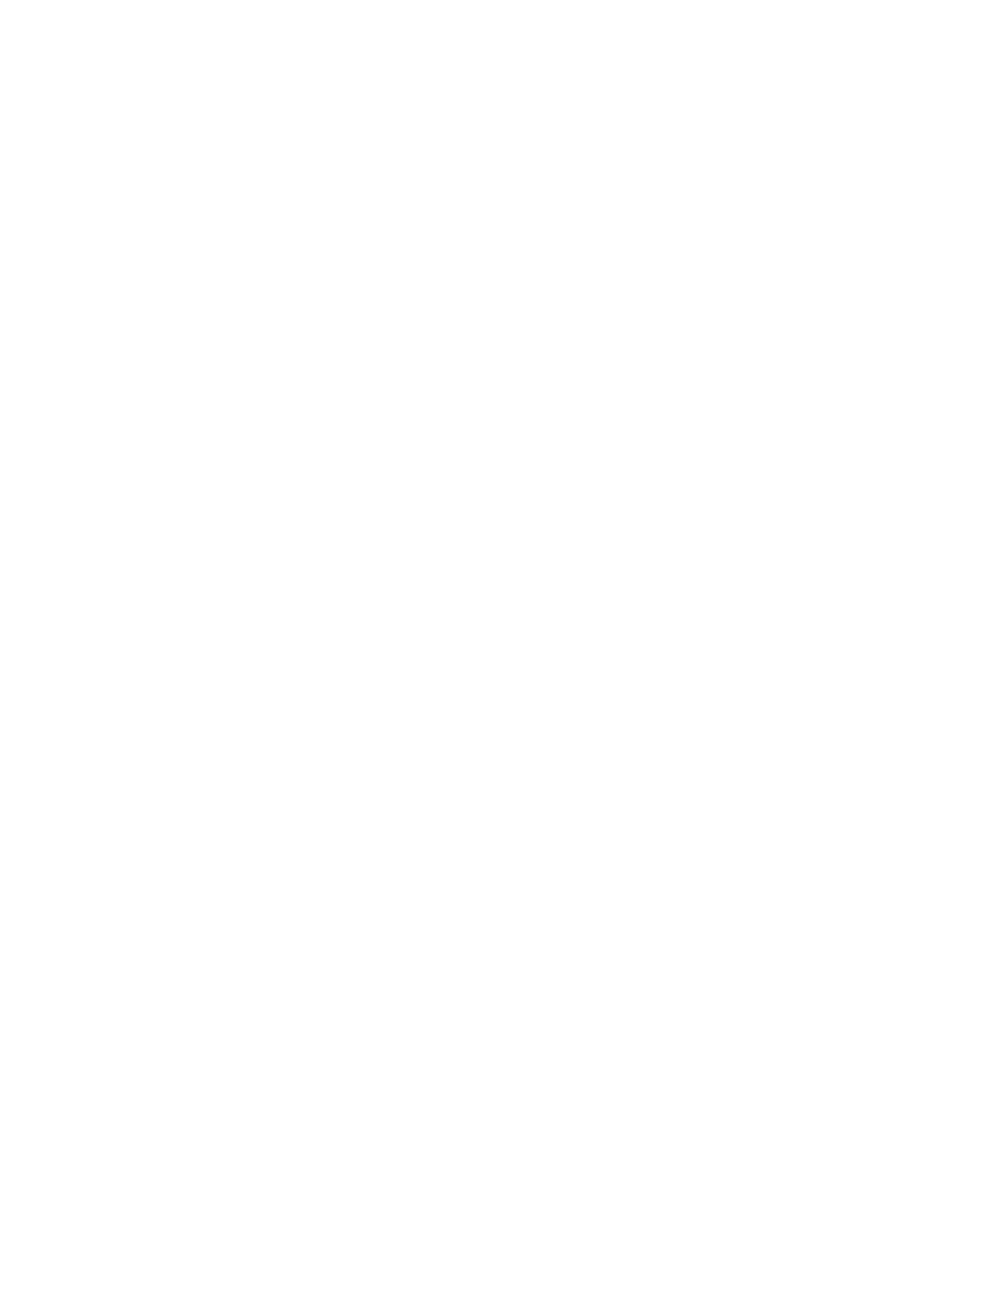 Elementor Developer - Freelance